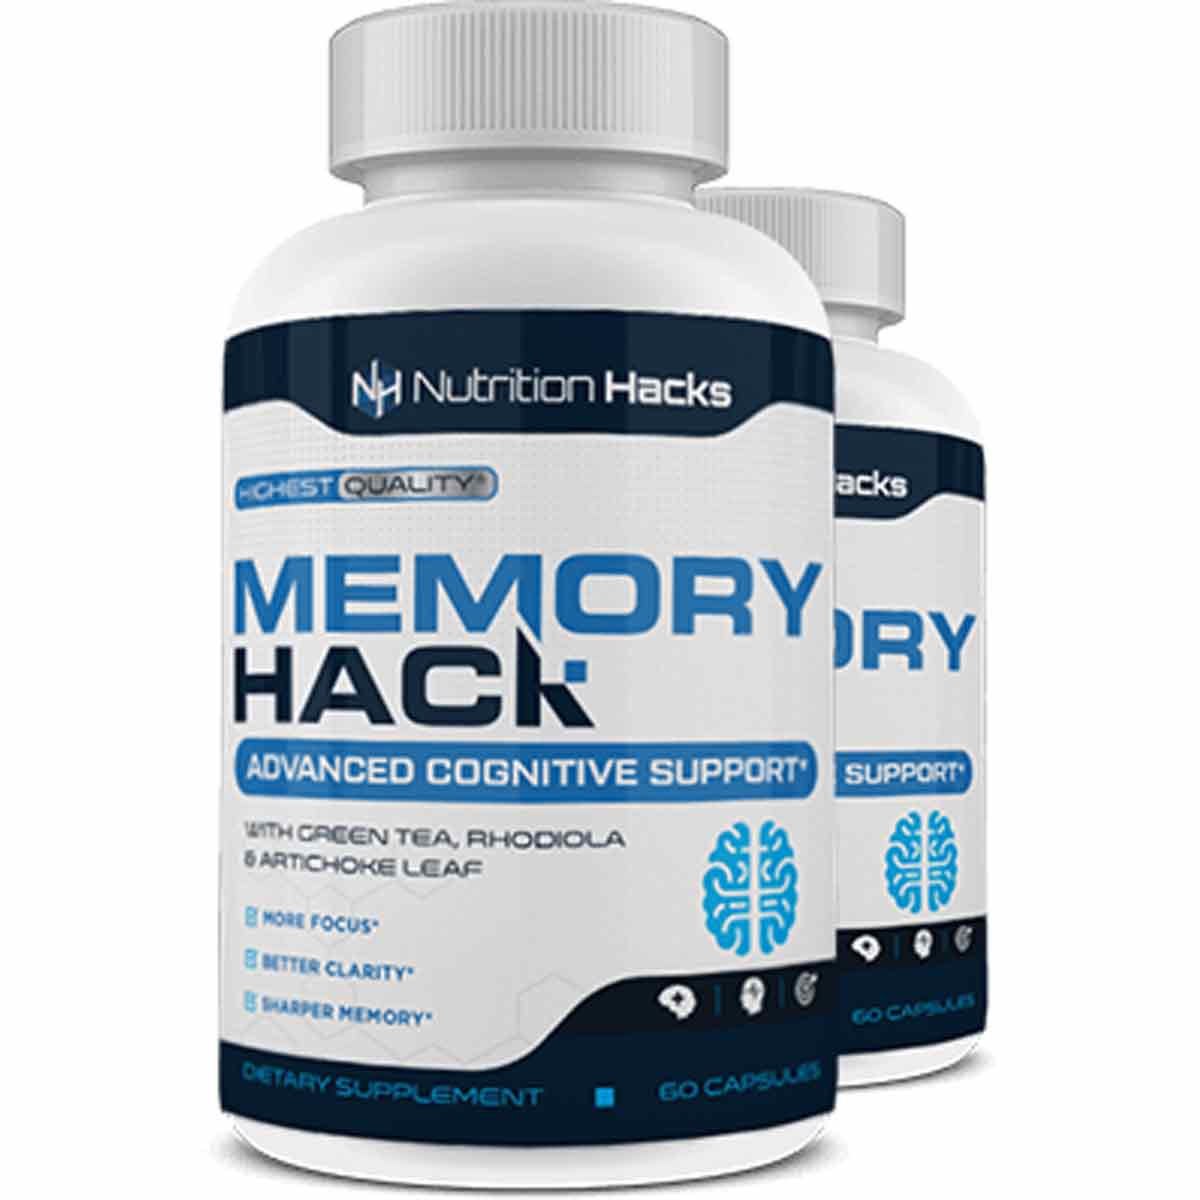 Memory Hack Ingredients Label